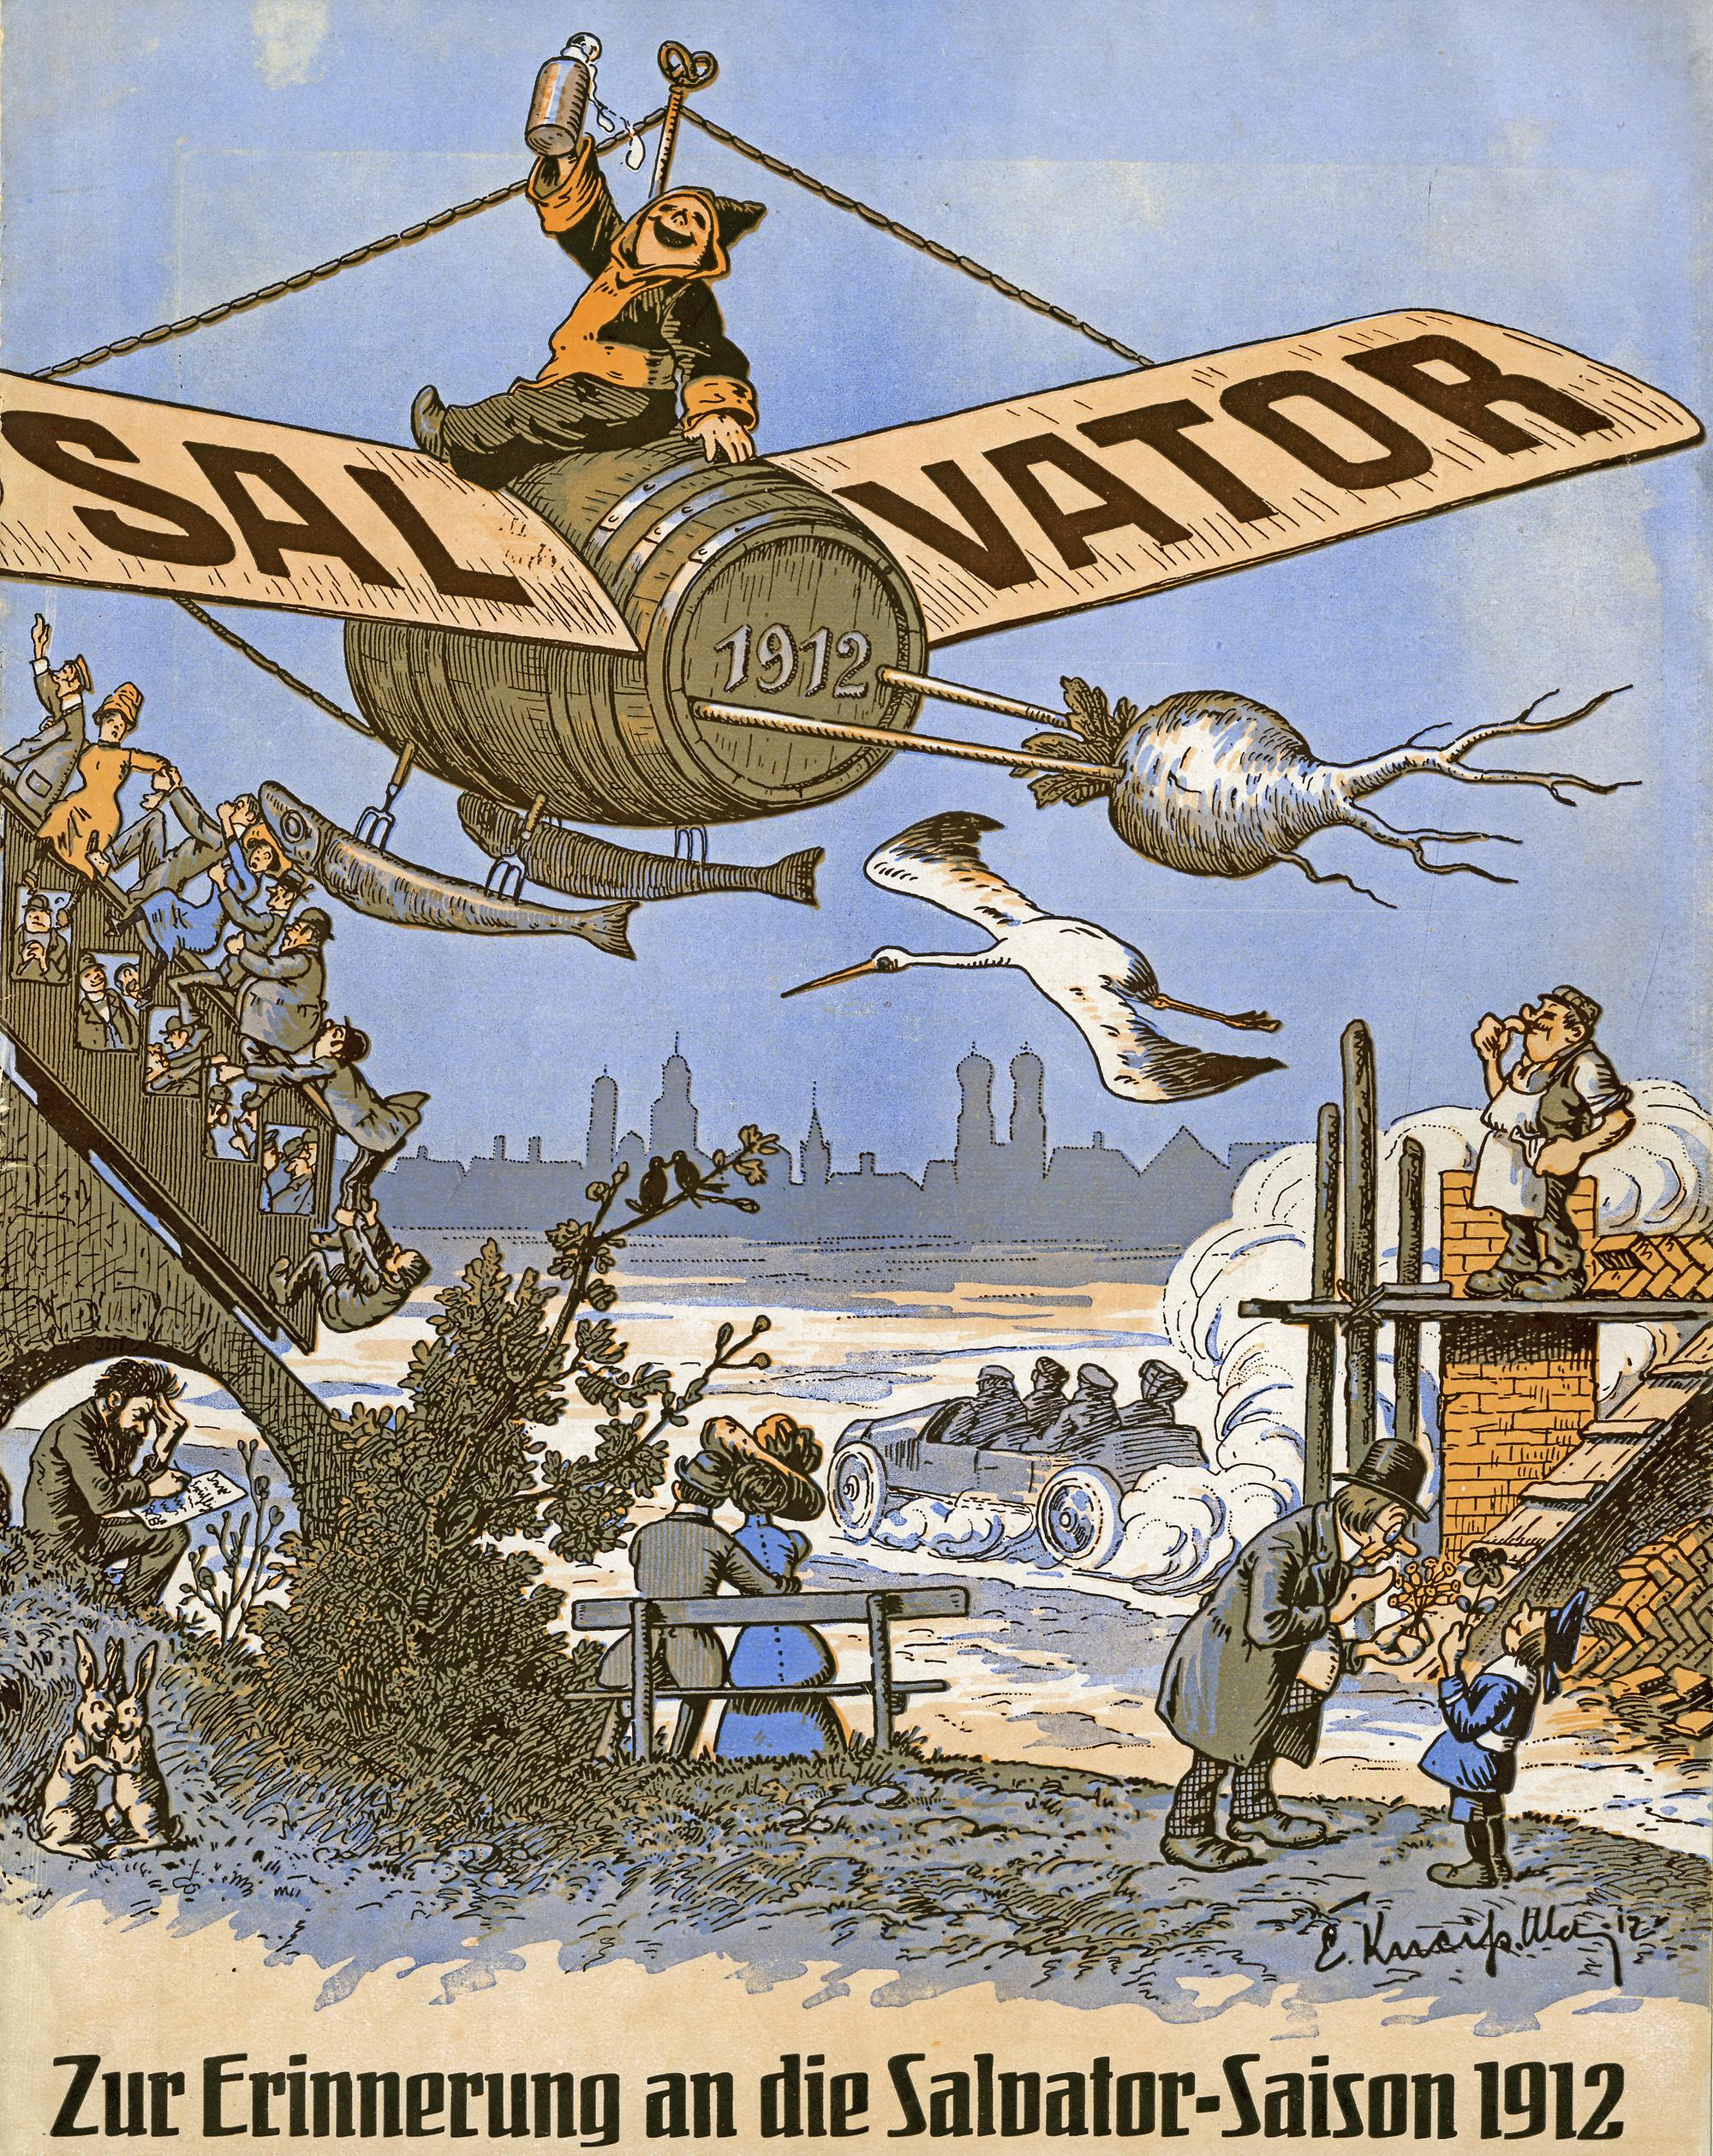 Auf zum Salvator: Salvator-Jahresheft 1912 (Zeichner: Emil Kneißl)